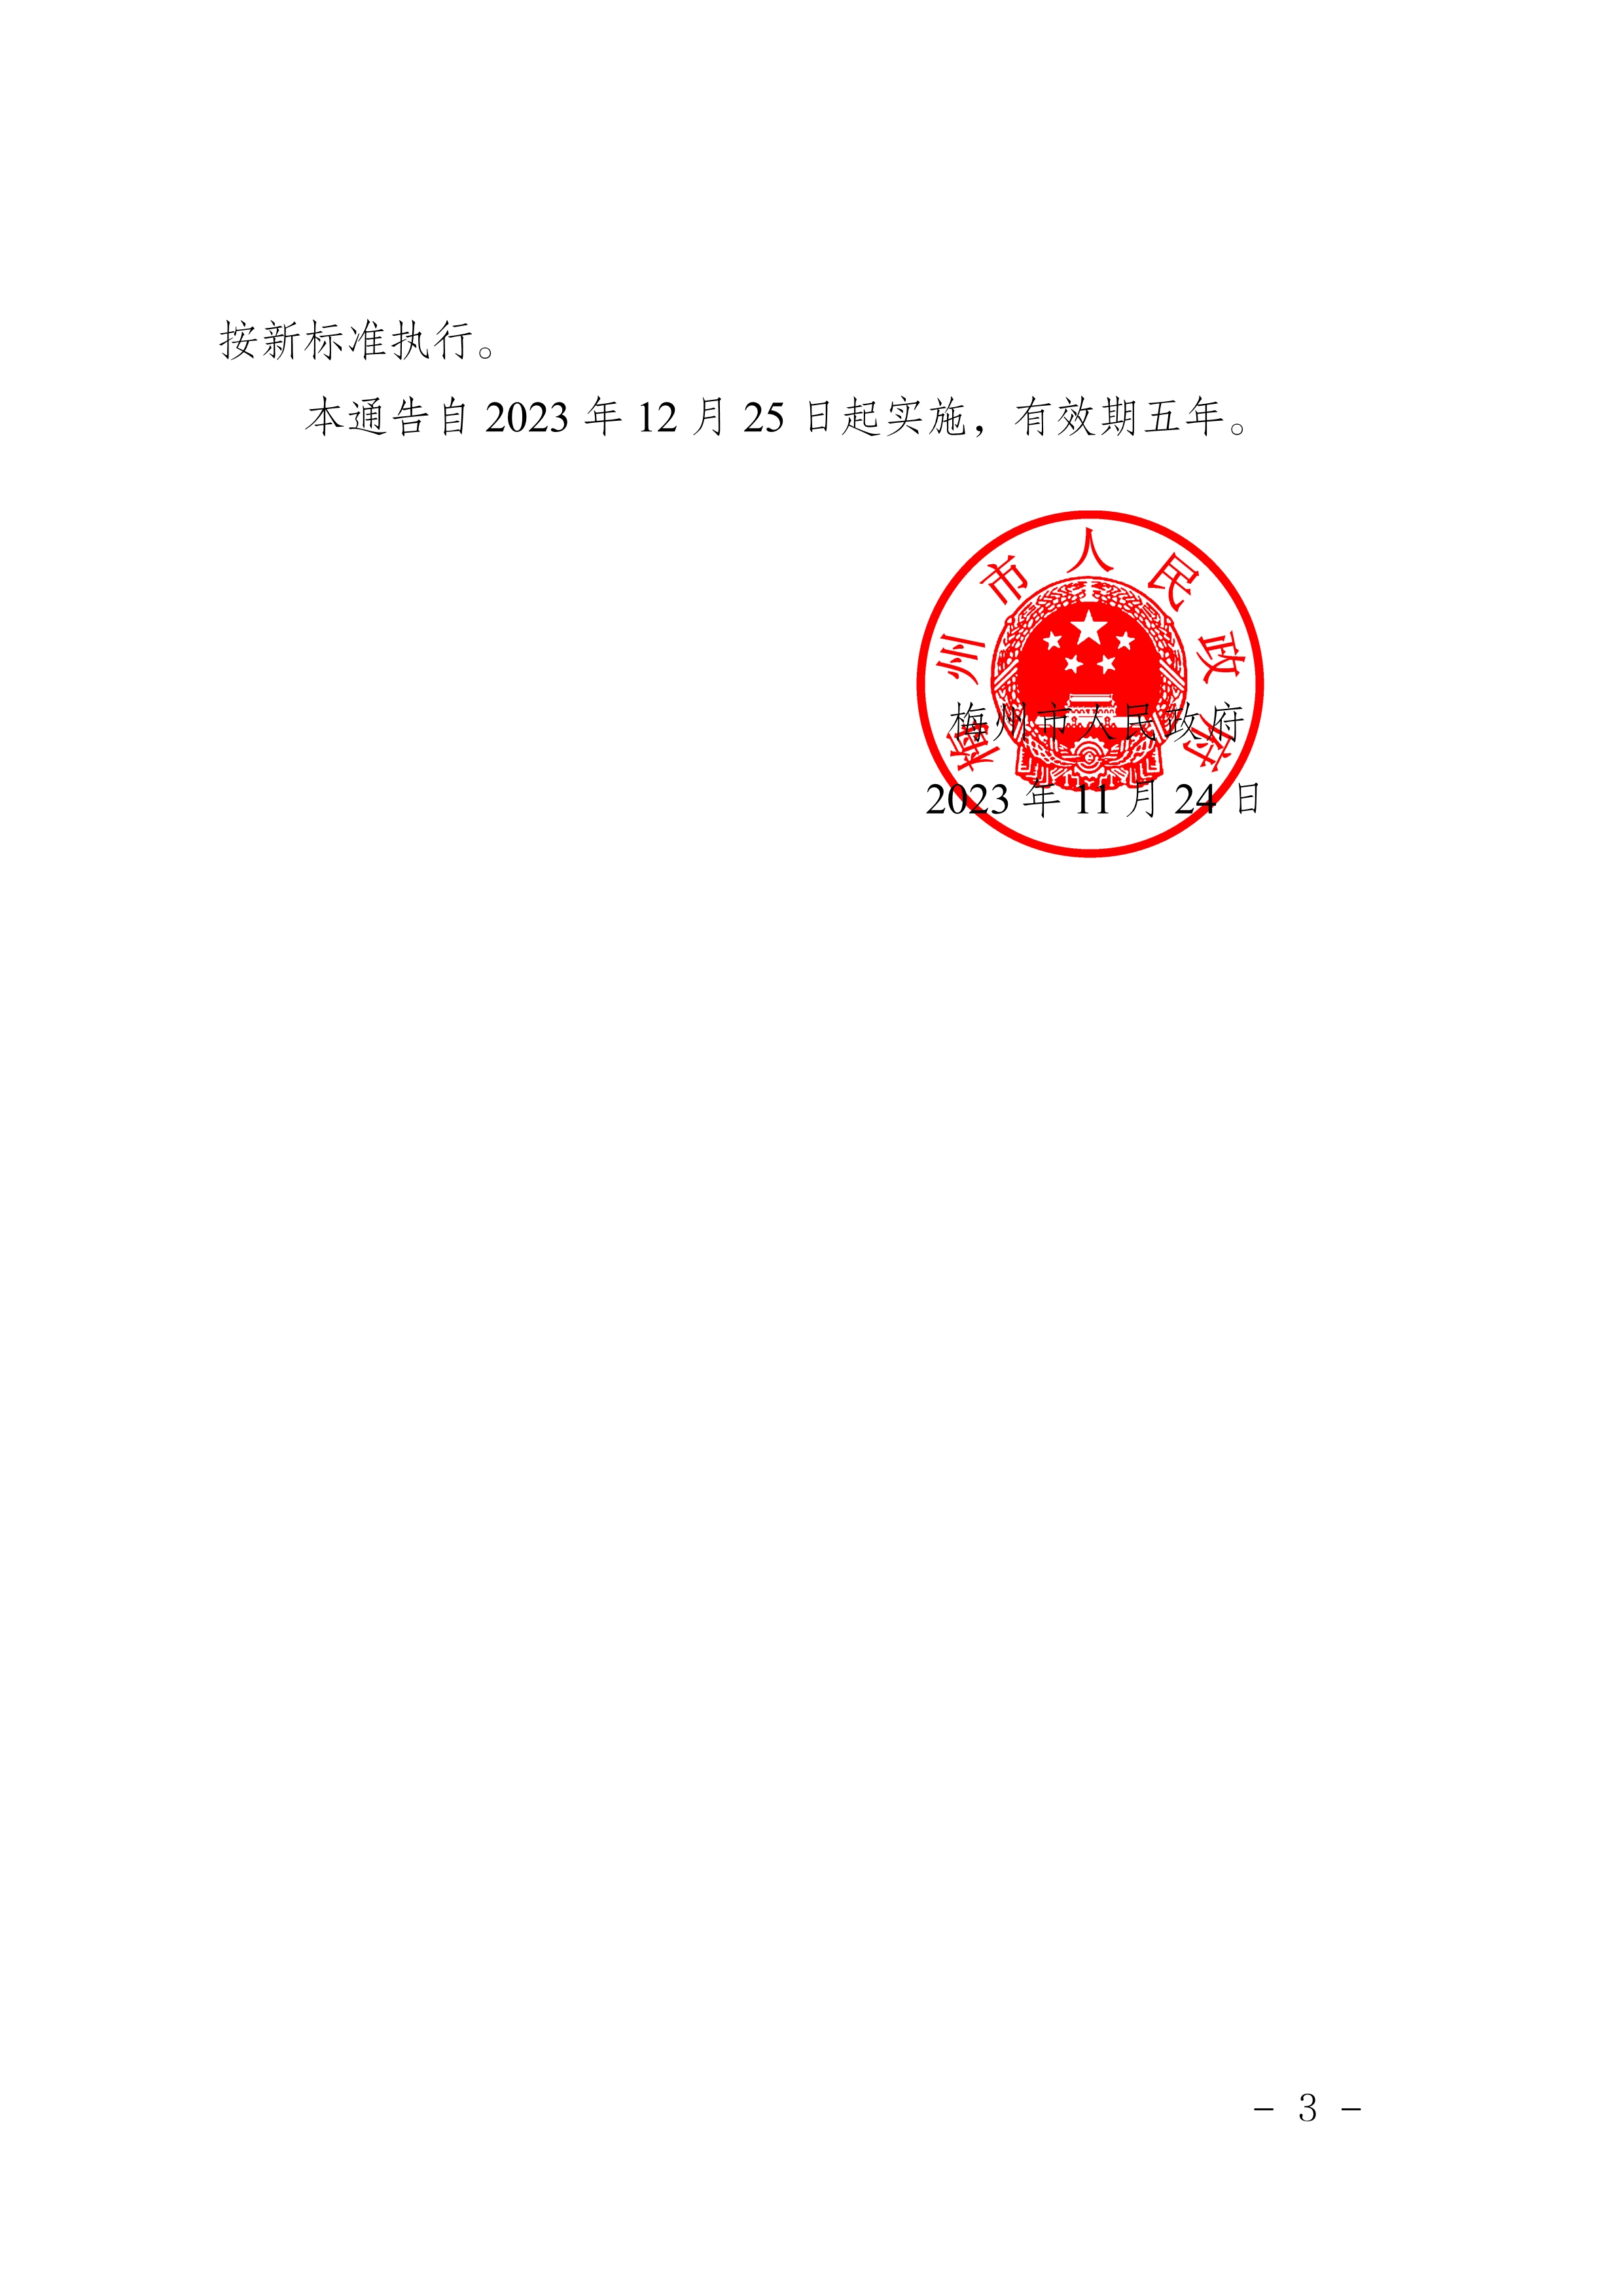 梅州市人民政府关于梅州市燃气锅炉执行大气污染物特别排放限值的通告_image3_out.jpg